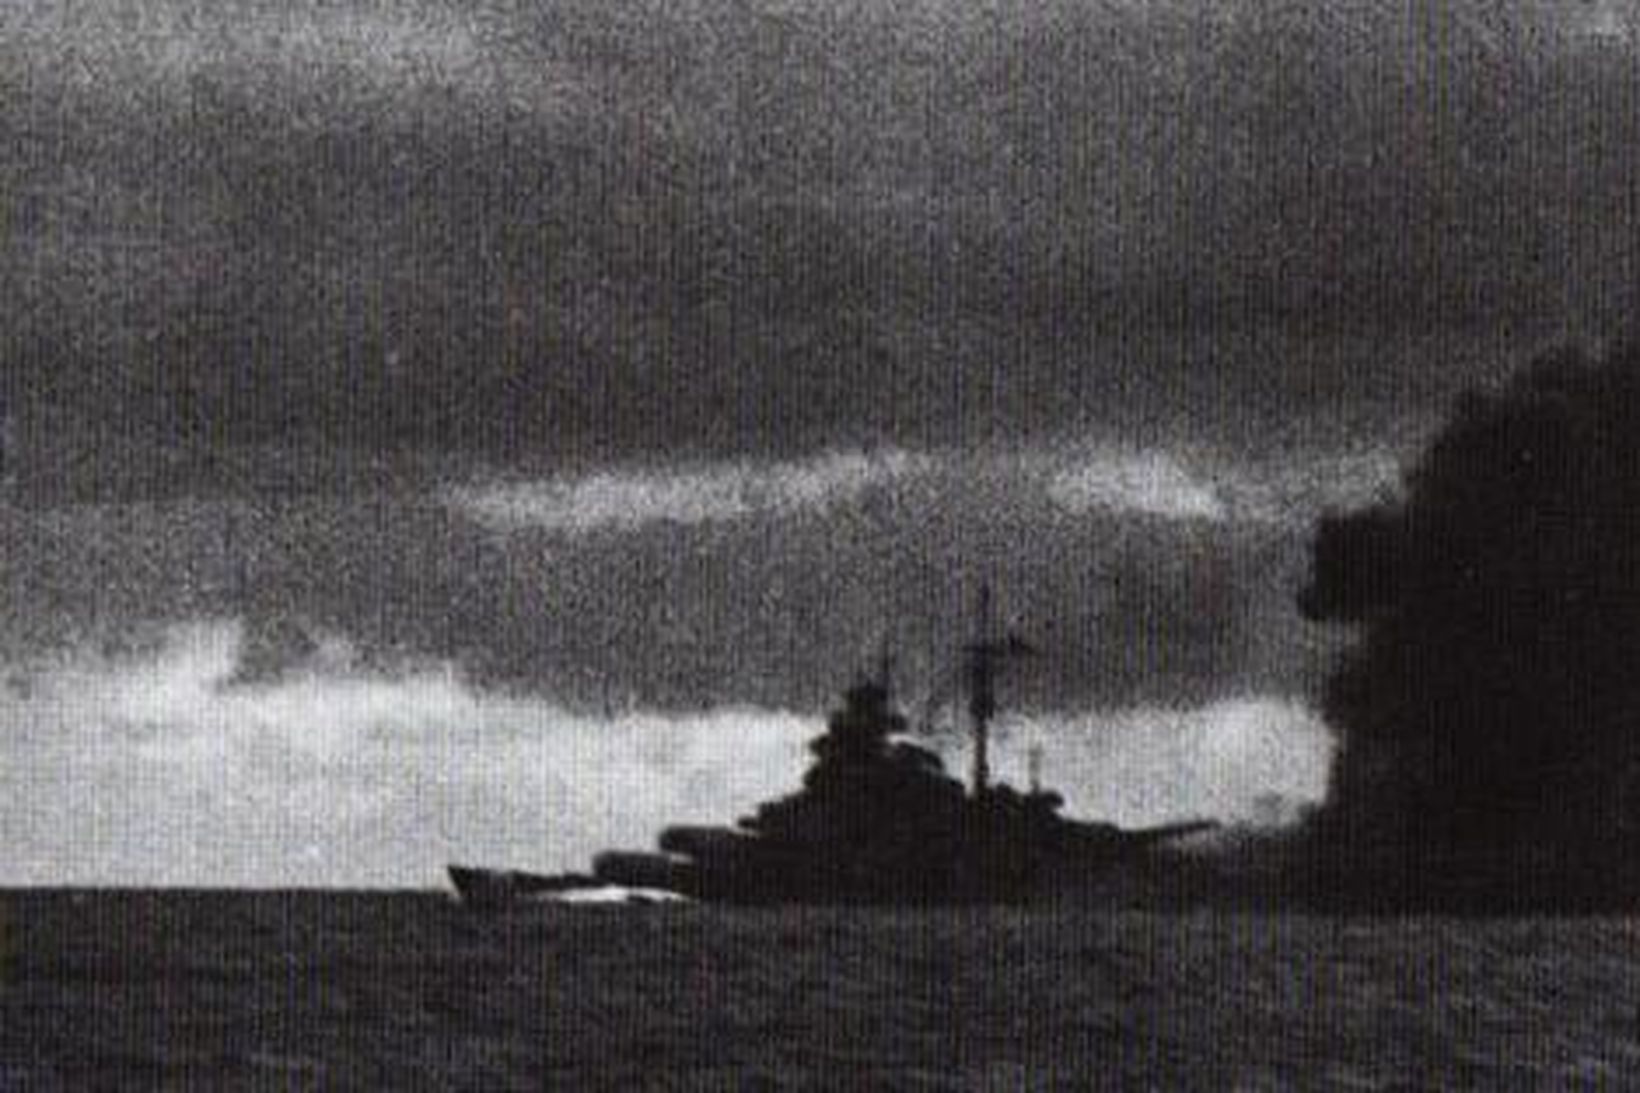 Þýska herskipið Bismarck eftir að það sökkti HMS Hood.